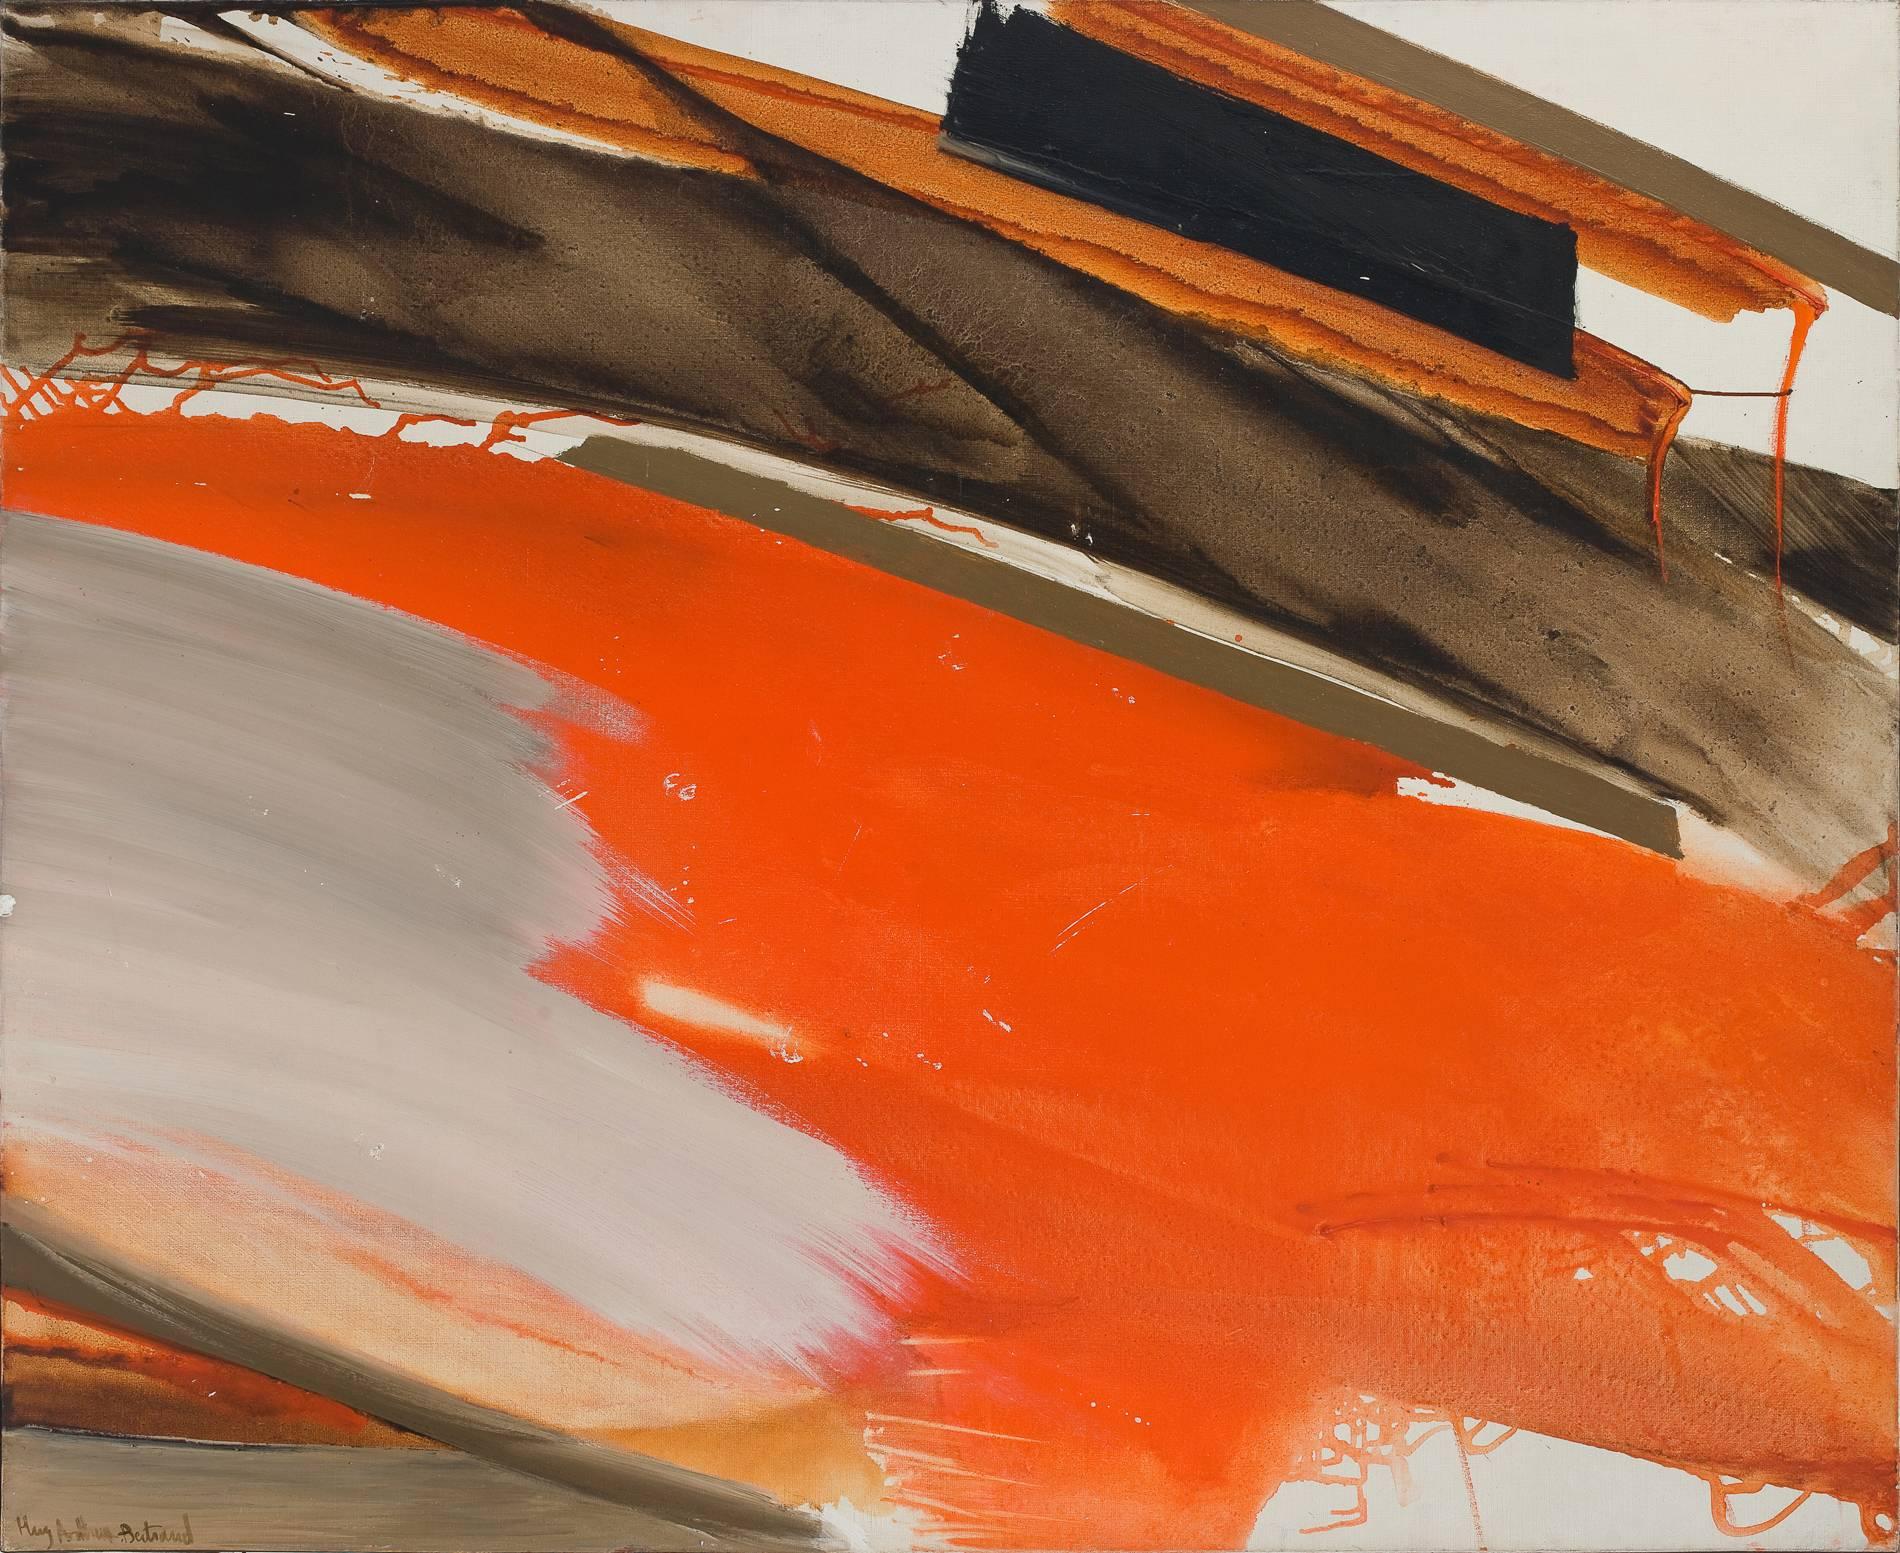 Huguette Arthur Bertrand
Déferlant rouge et gris sur brun, 1970s
Oil on canvas
130 x 162 cm. / 51.2 x 63.8 in.